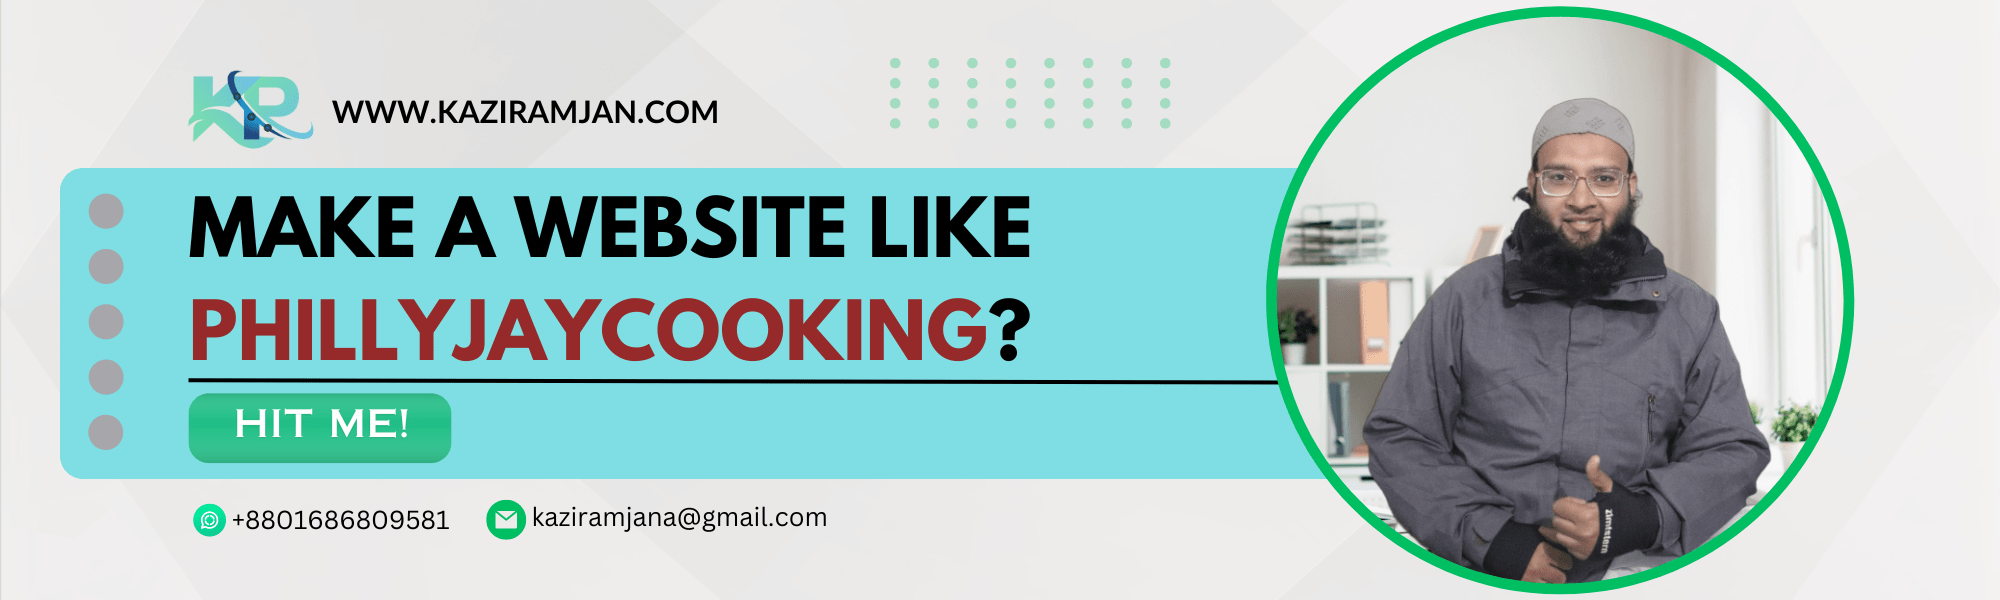 Make Website like phillyjaycooking.com?